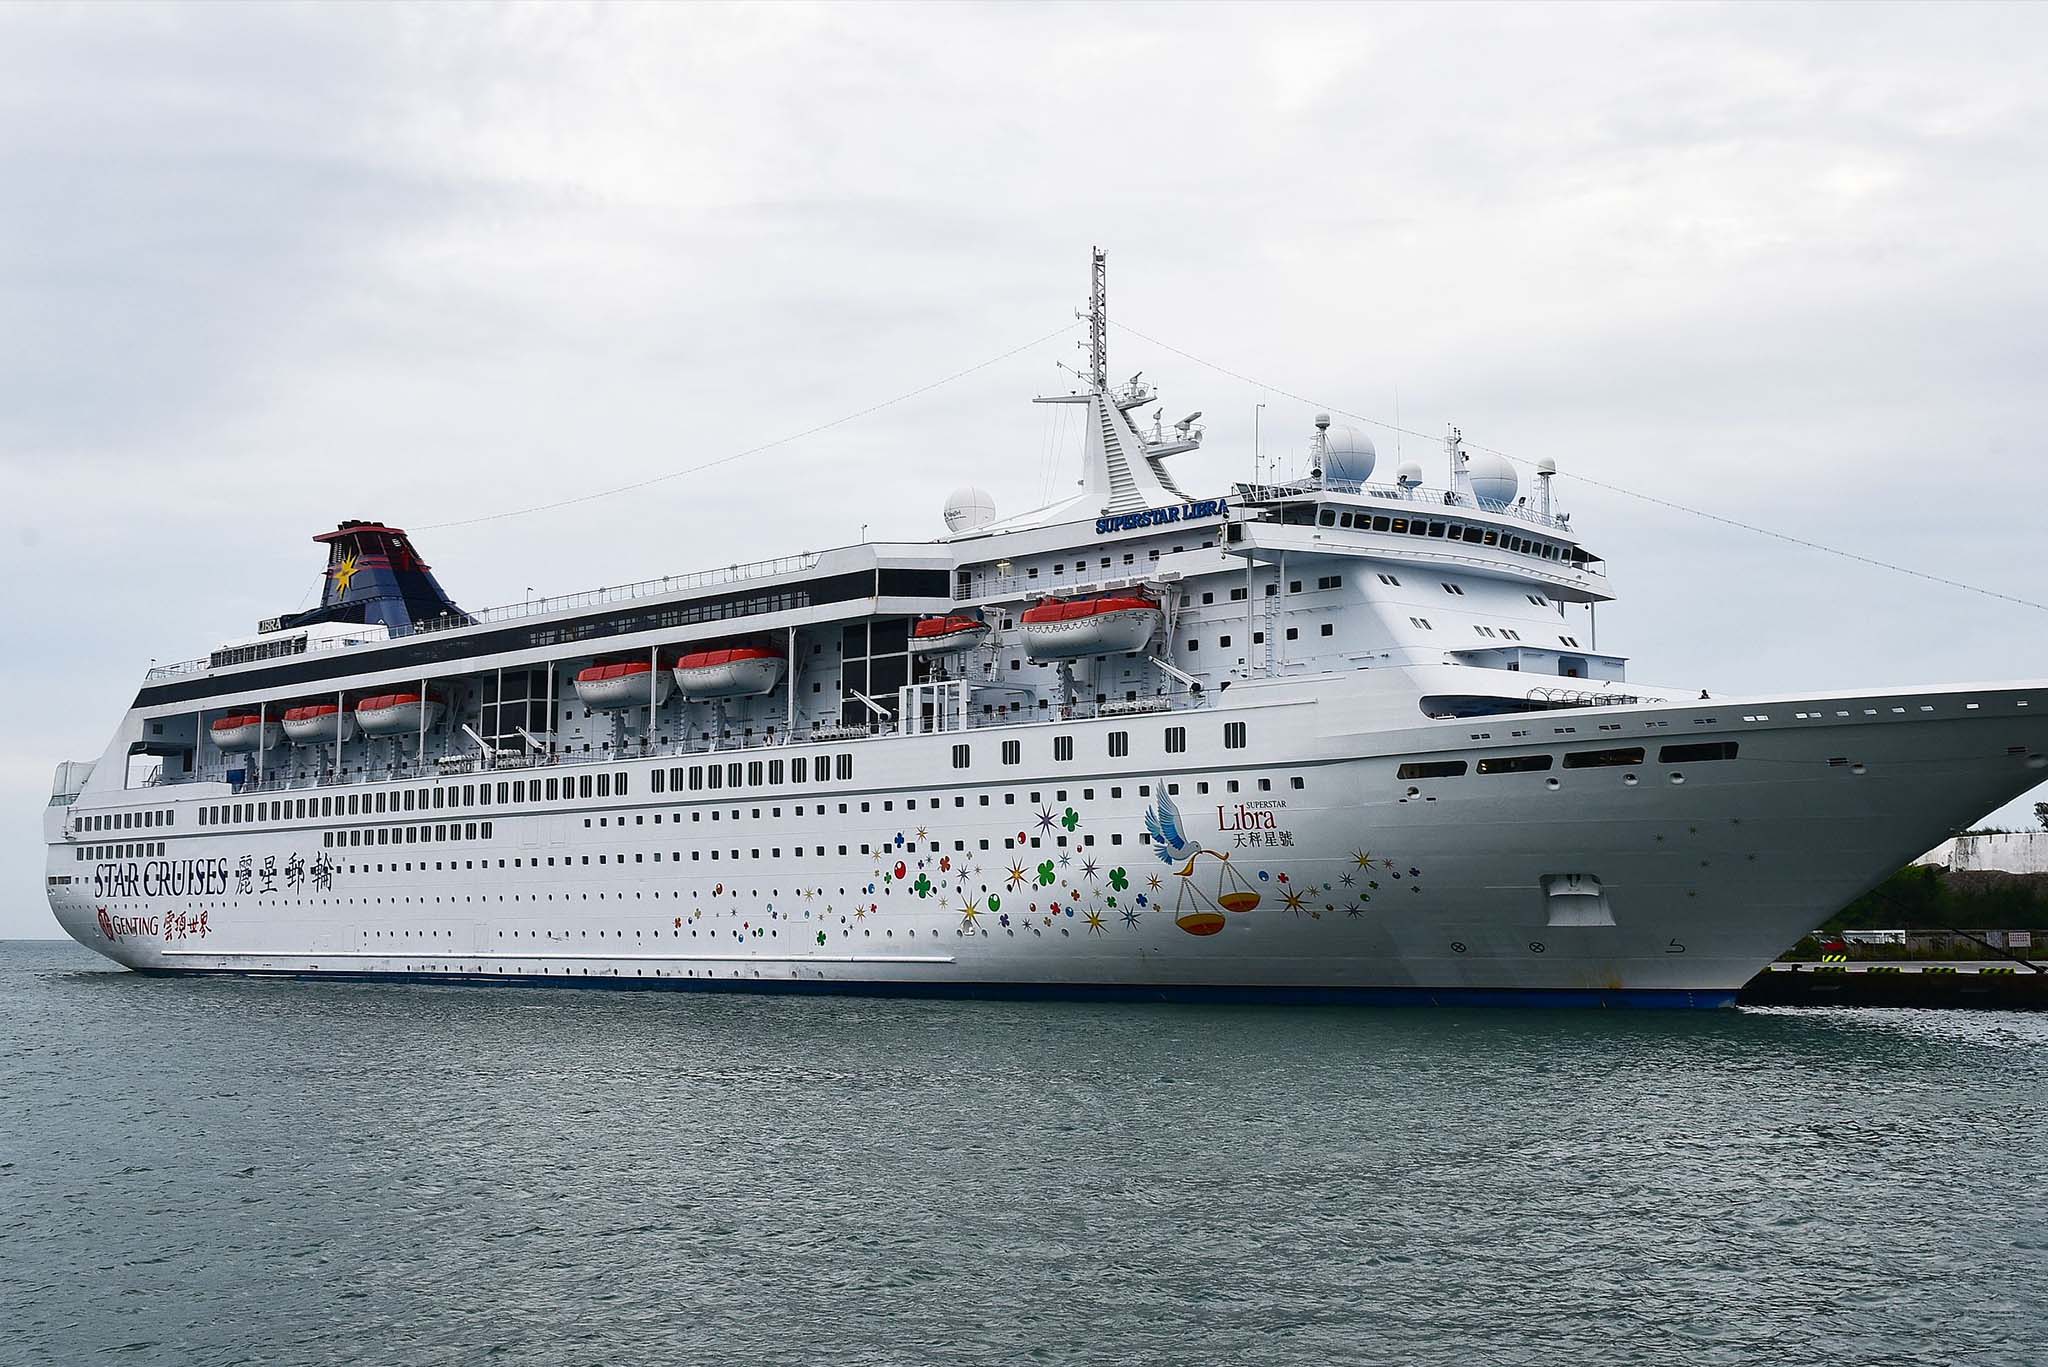 Cruise ship for accommodating Ukranian refugees